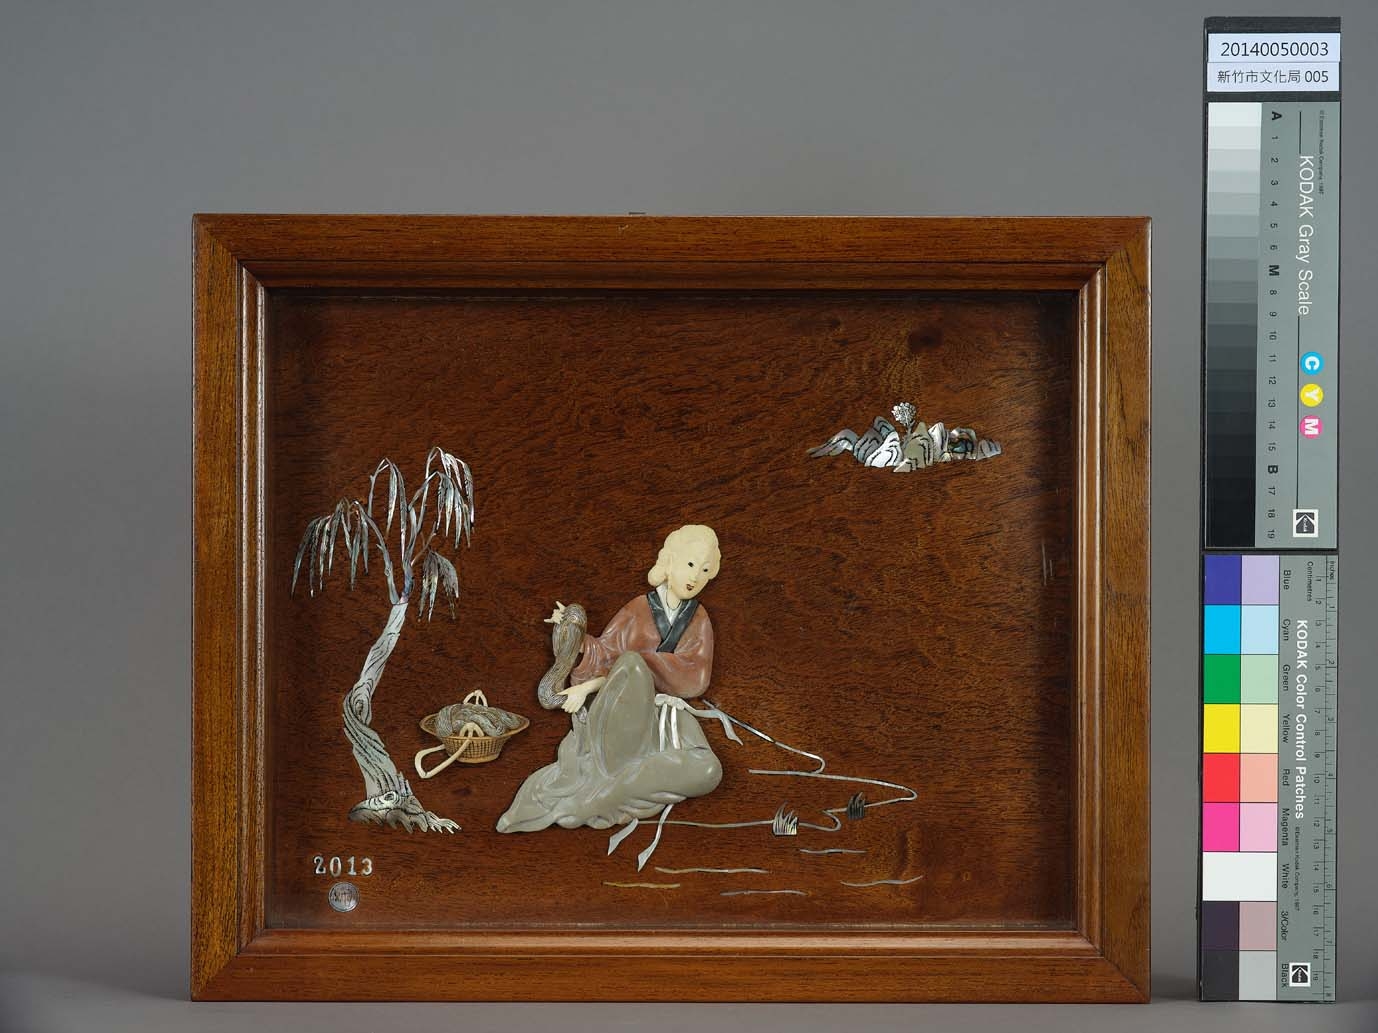 〈西施浣紗〉這件作品在構圖上以中間女子為核心，一旁的柳樹和浣紗籃刻畫細膩，幾道水紋和遠方的樹石山景帶出景深。